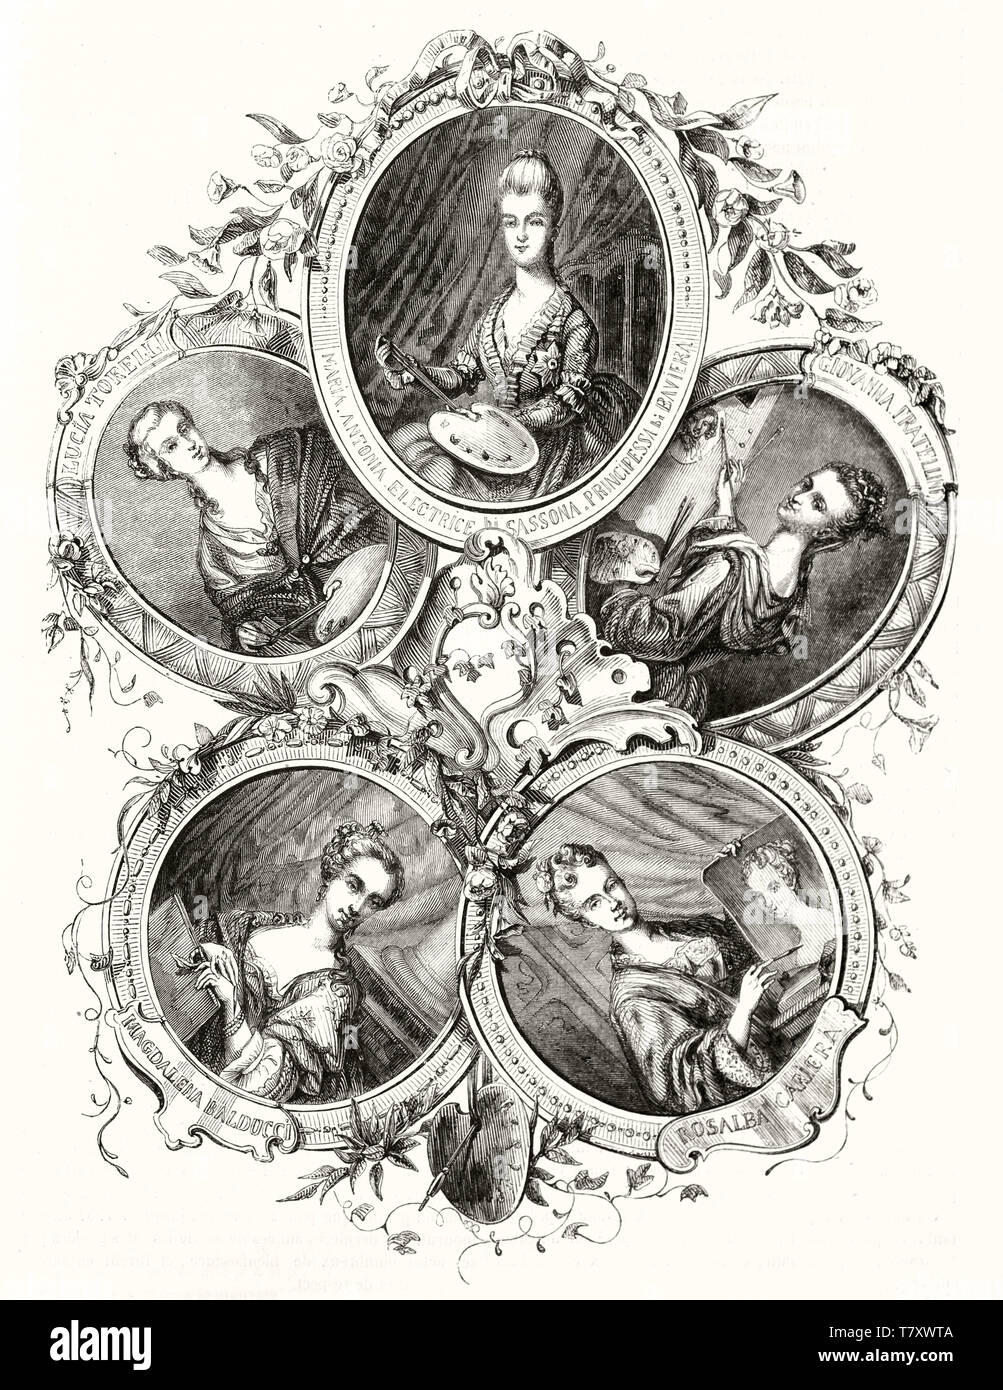 Cinque autoritratti di pittori femmina, ciascuno in una cornice ovale. Tutta la composizione è cerchio disposto e isolato su sfondo bianco. Publ. su Magasin pittoresco Parigi 1848 Foto Stock